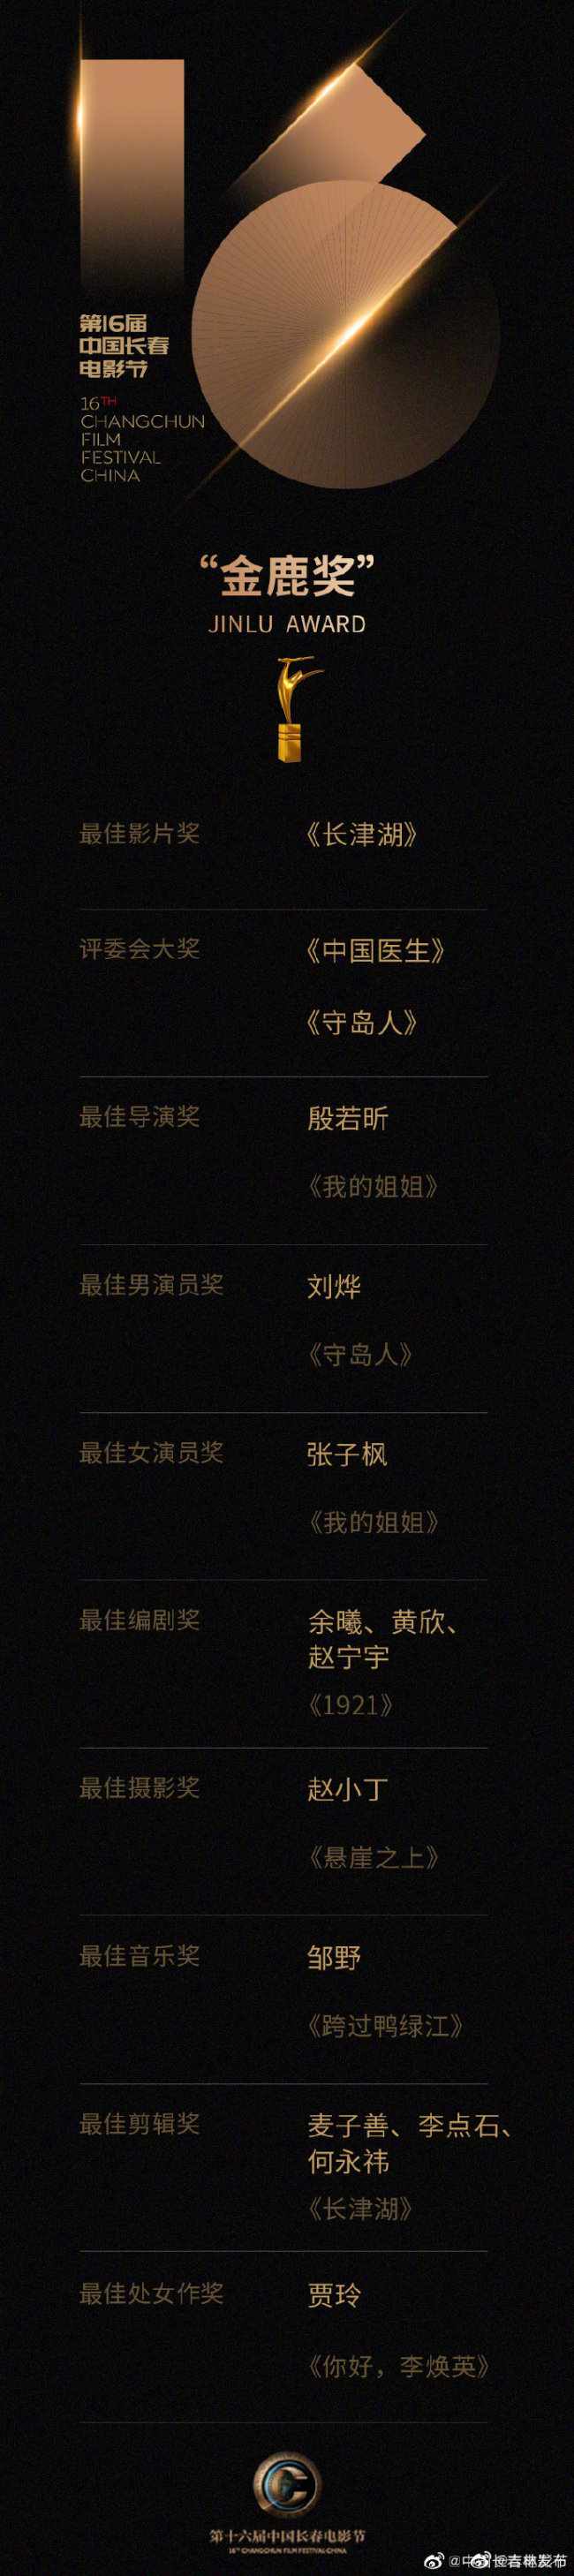 第十六届中国长春电影节获奖名单公布：《长津湖》获最佳影片奖